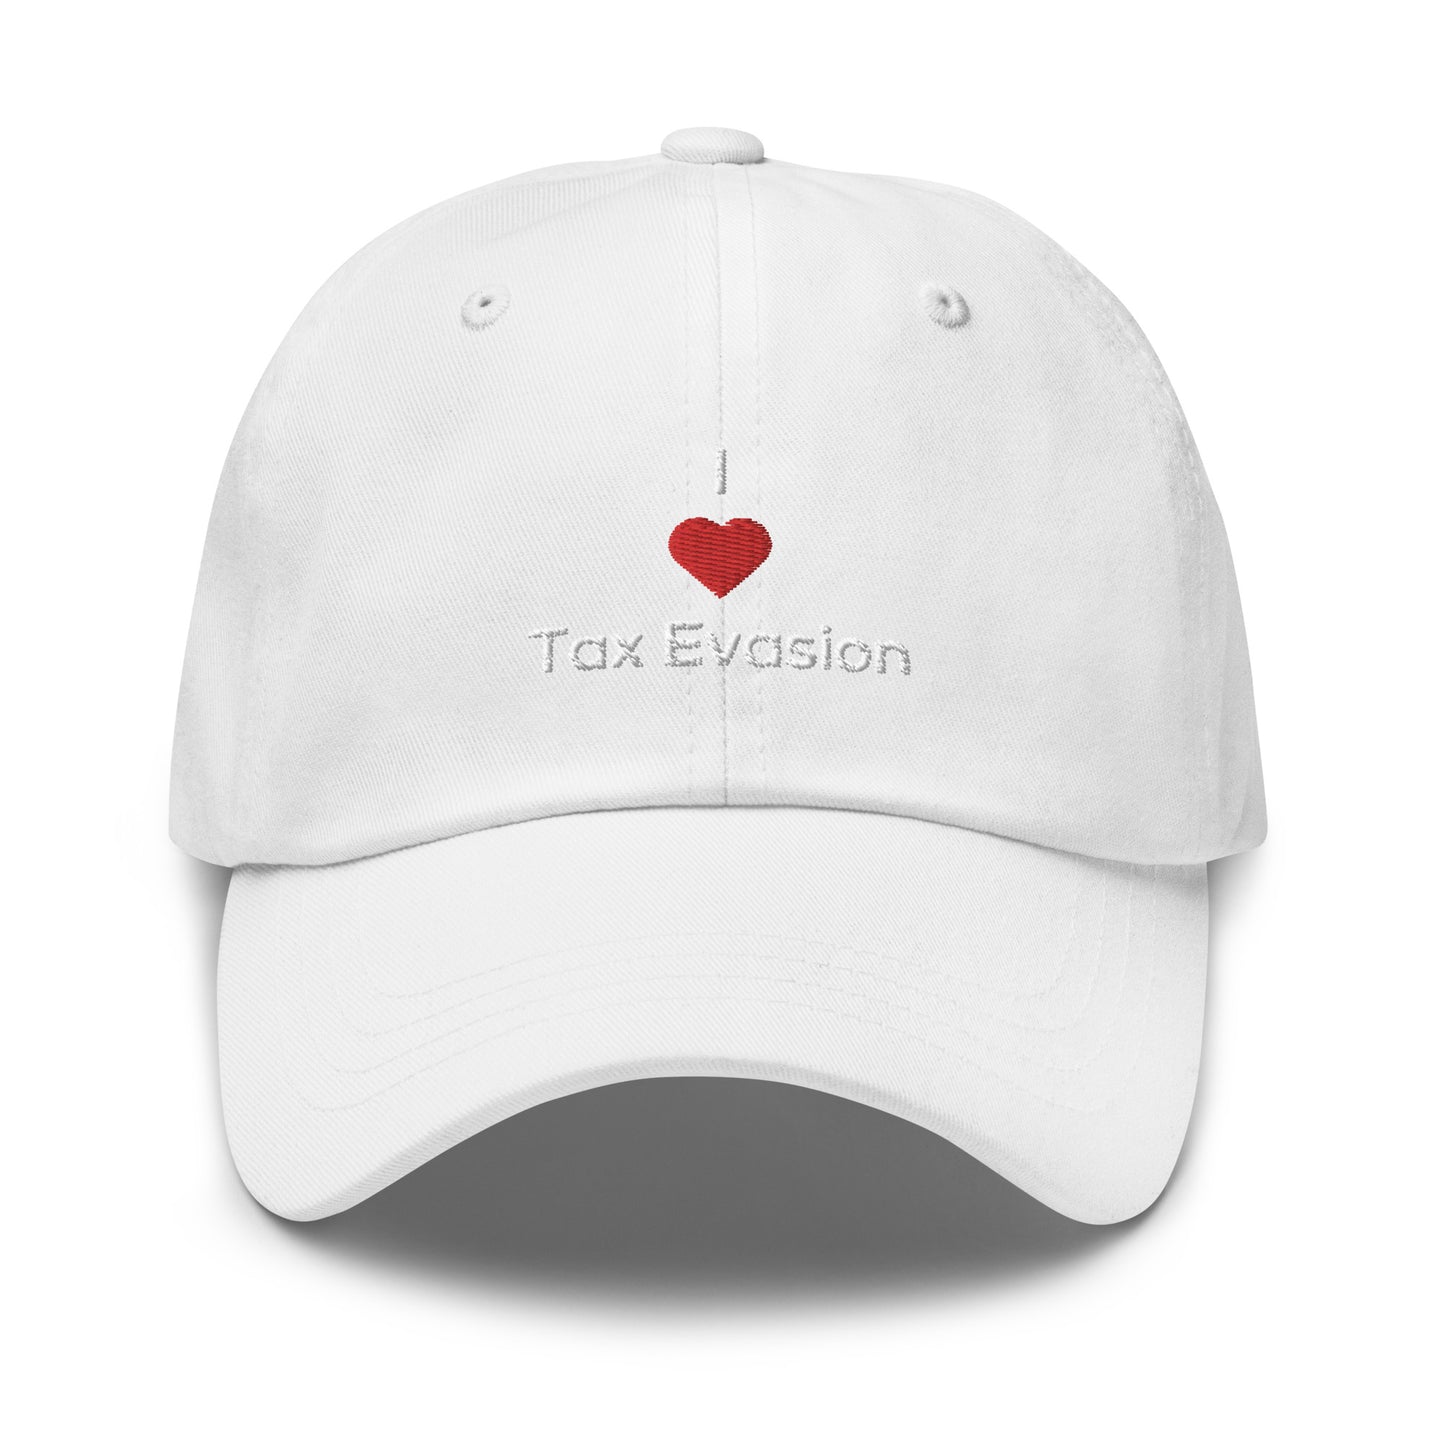 I <3 Tax Evasion Cap